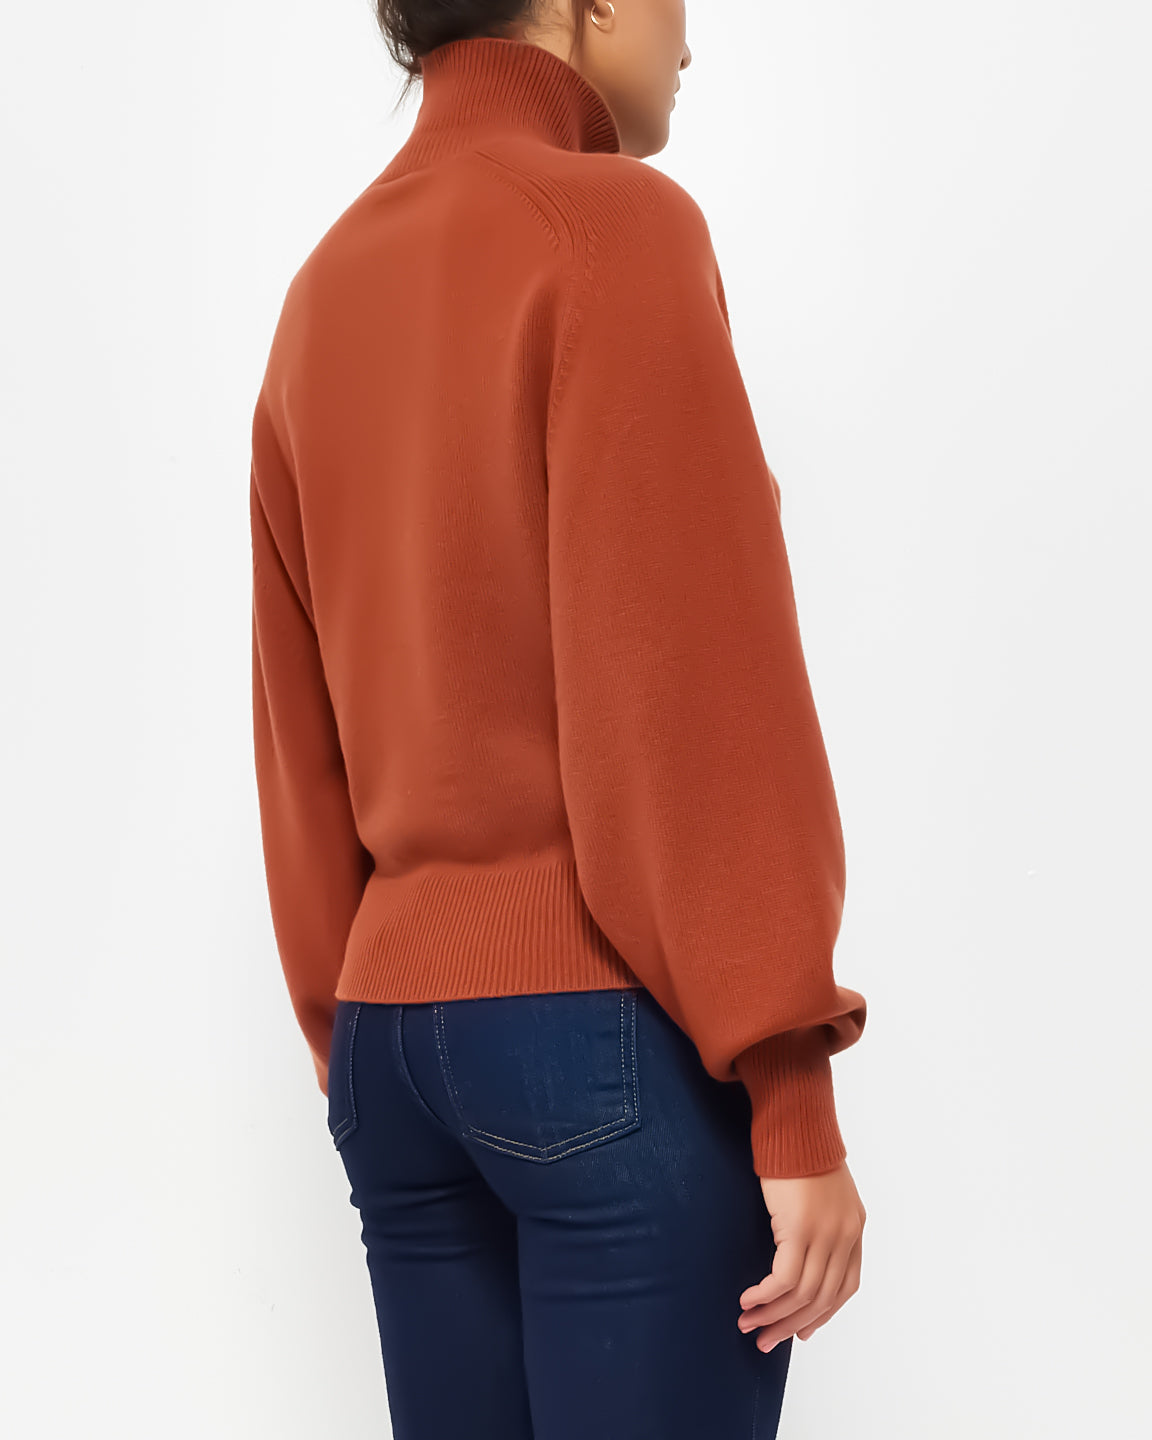 Chloé Rust Cashmere Turtleneck Sweater - S